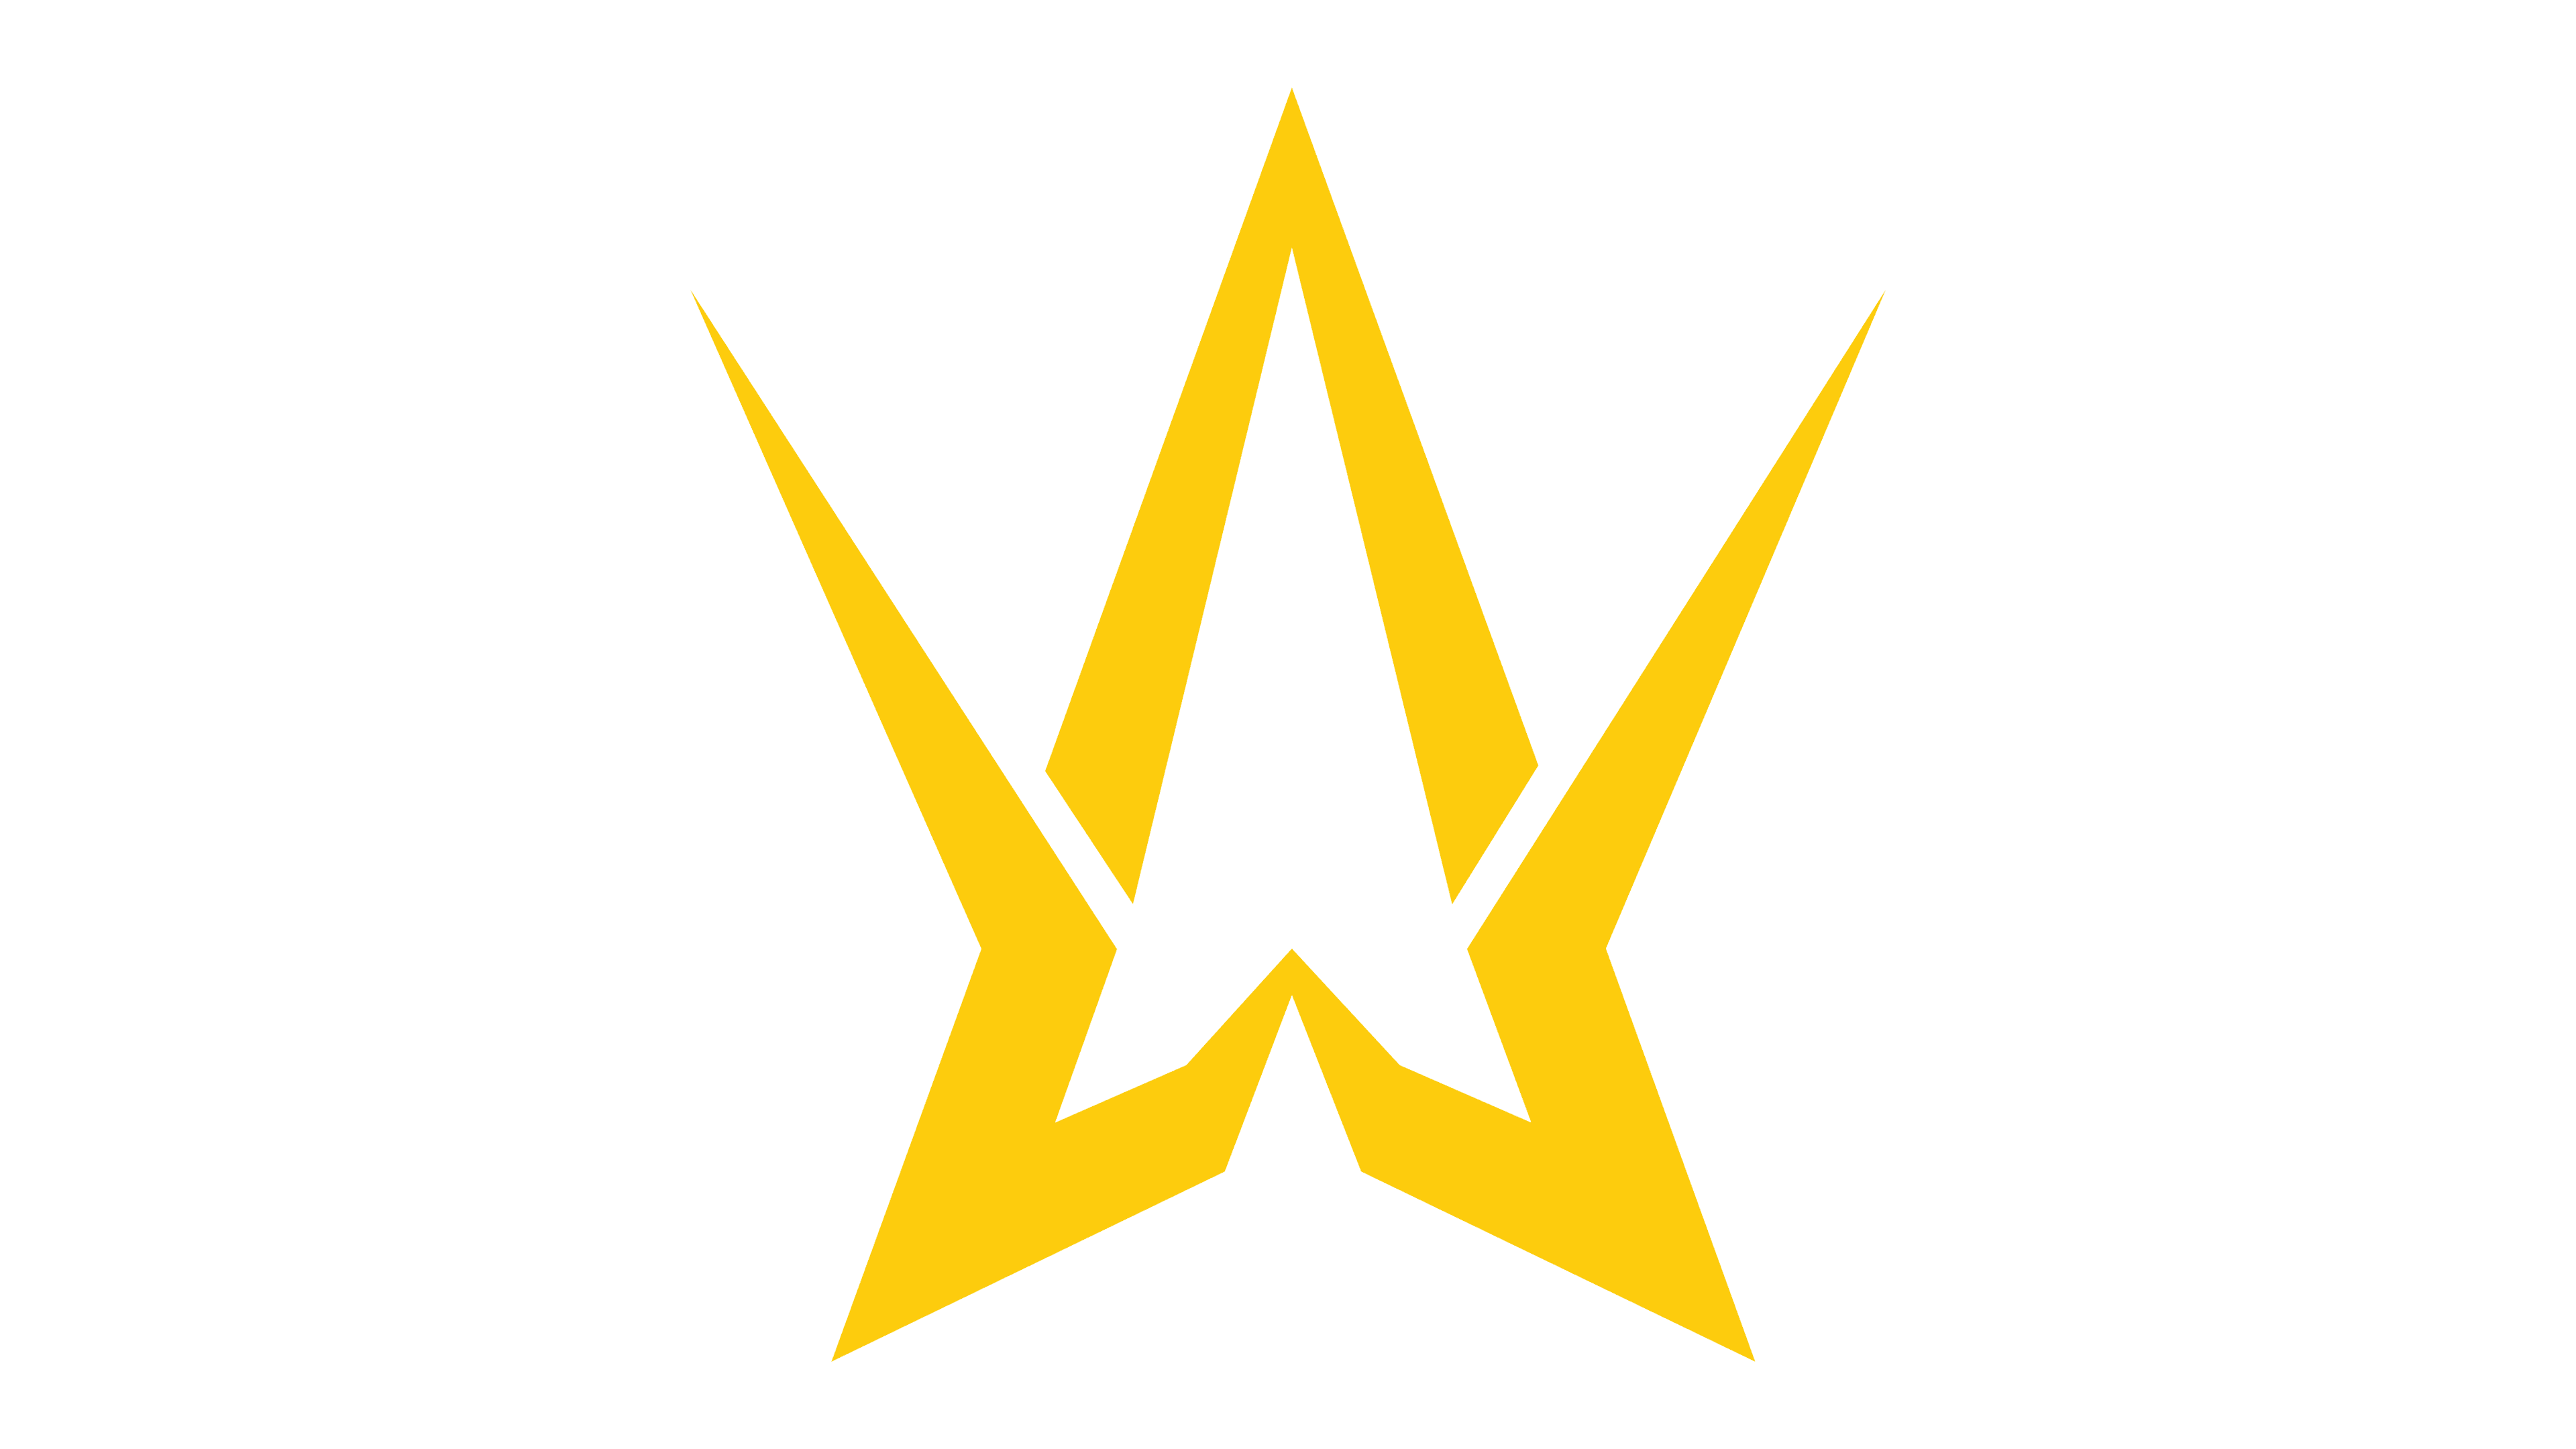 alan walker logo design | Alan walker, Walker logo, Walker